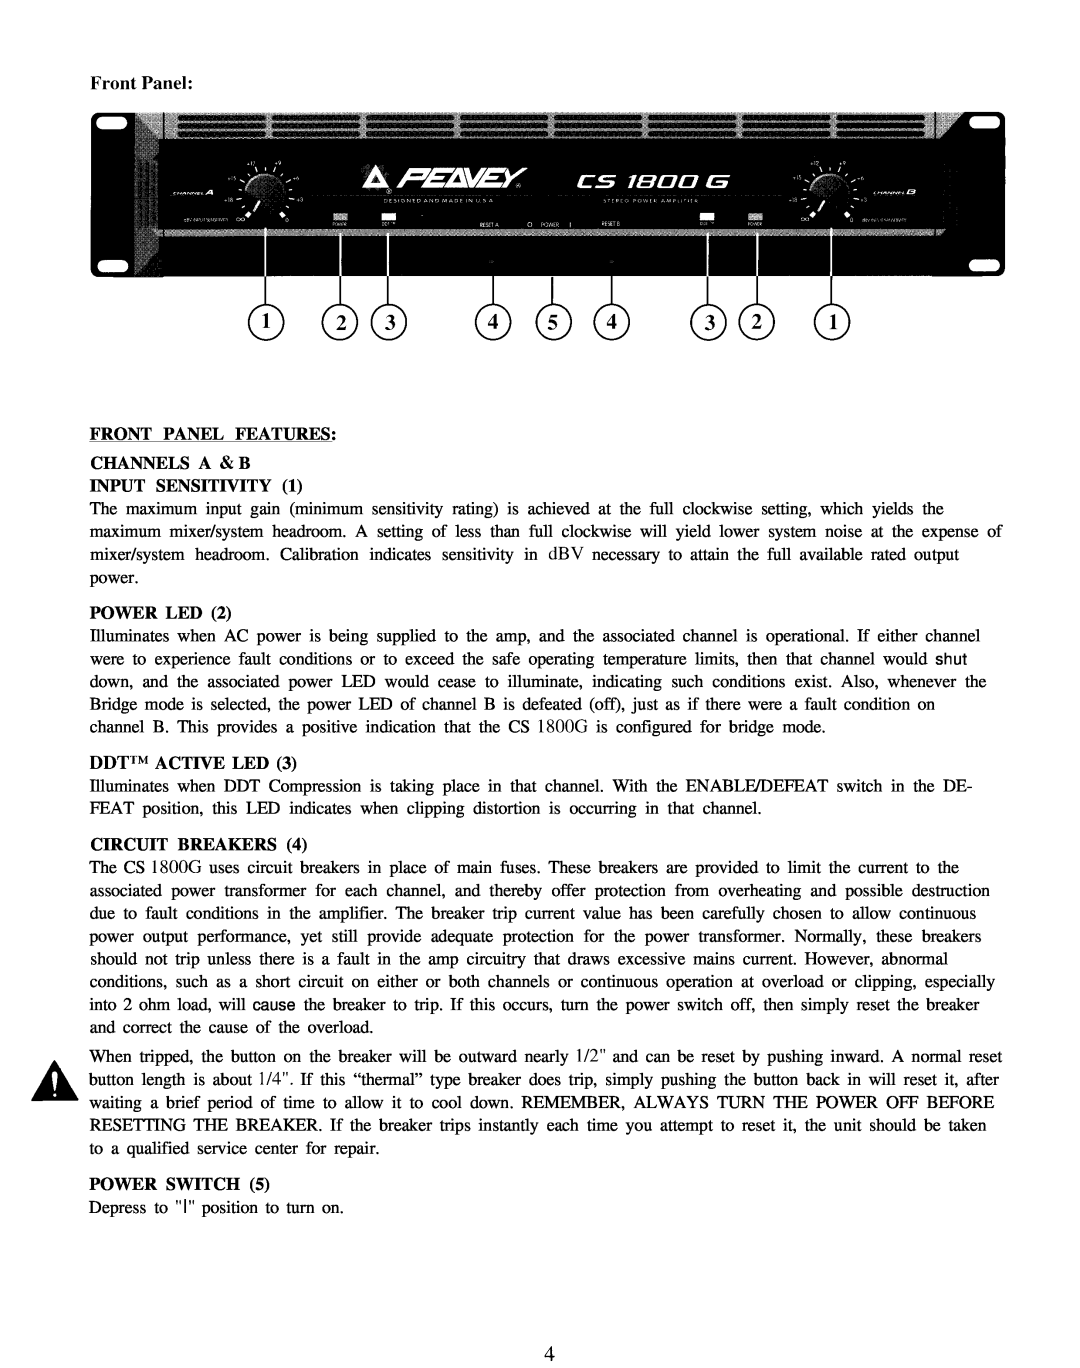 Peavey CS 1800G Front Panel Features Channels A & B, Input Sensitivity, Power Led, Ddttm Active Led, Circuit Breakers 